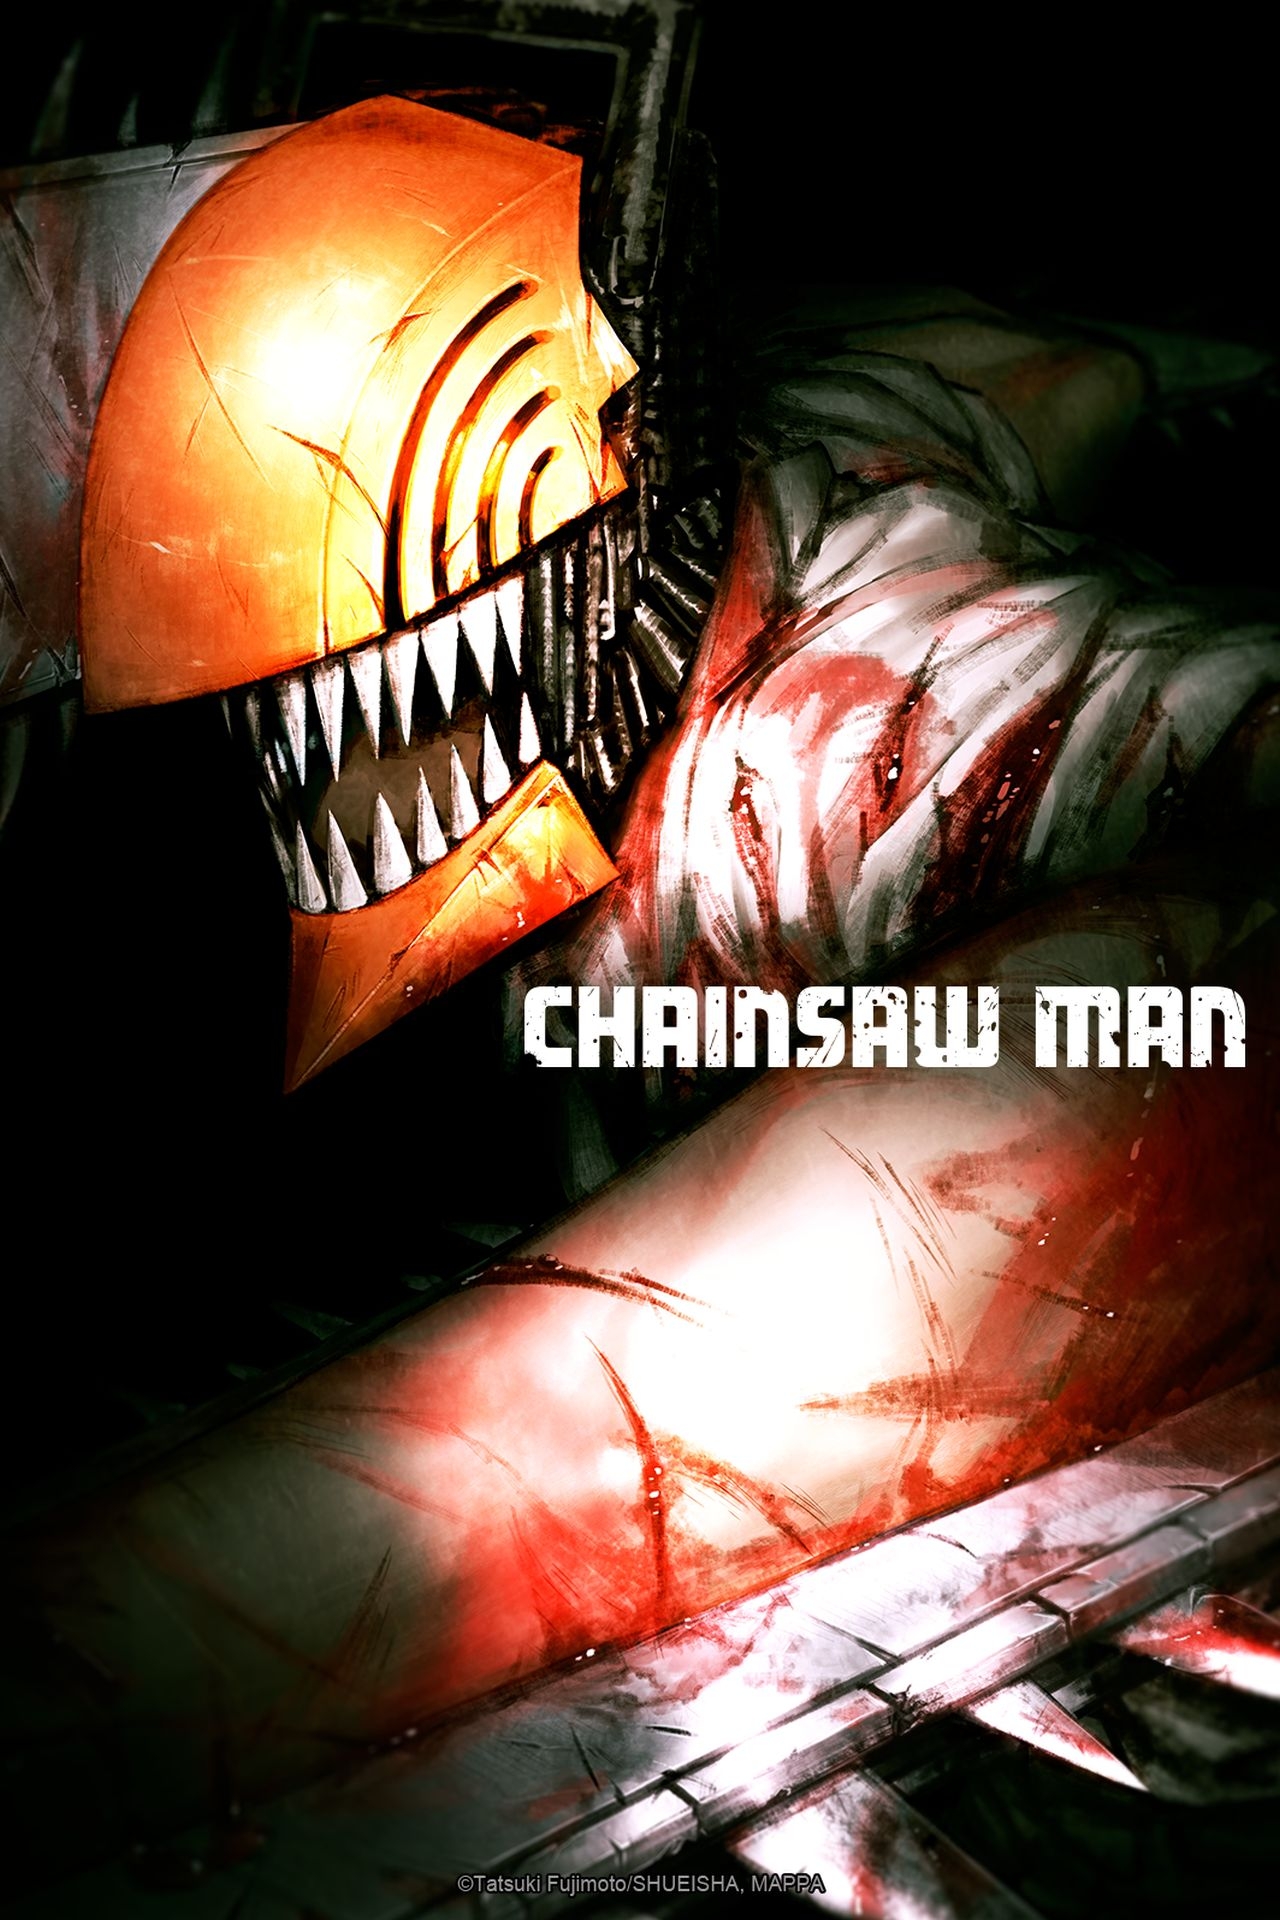 Watch Chainsaw Man Season 1 Dubbed outside USA on Hulu